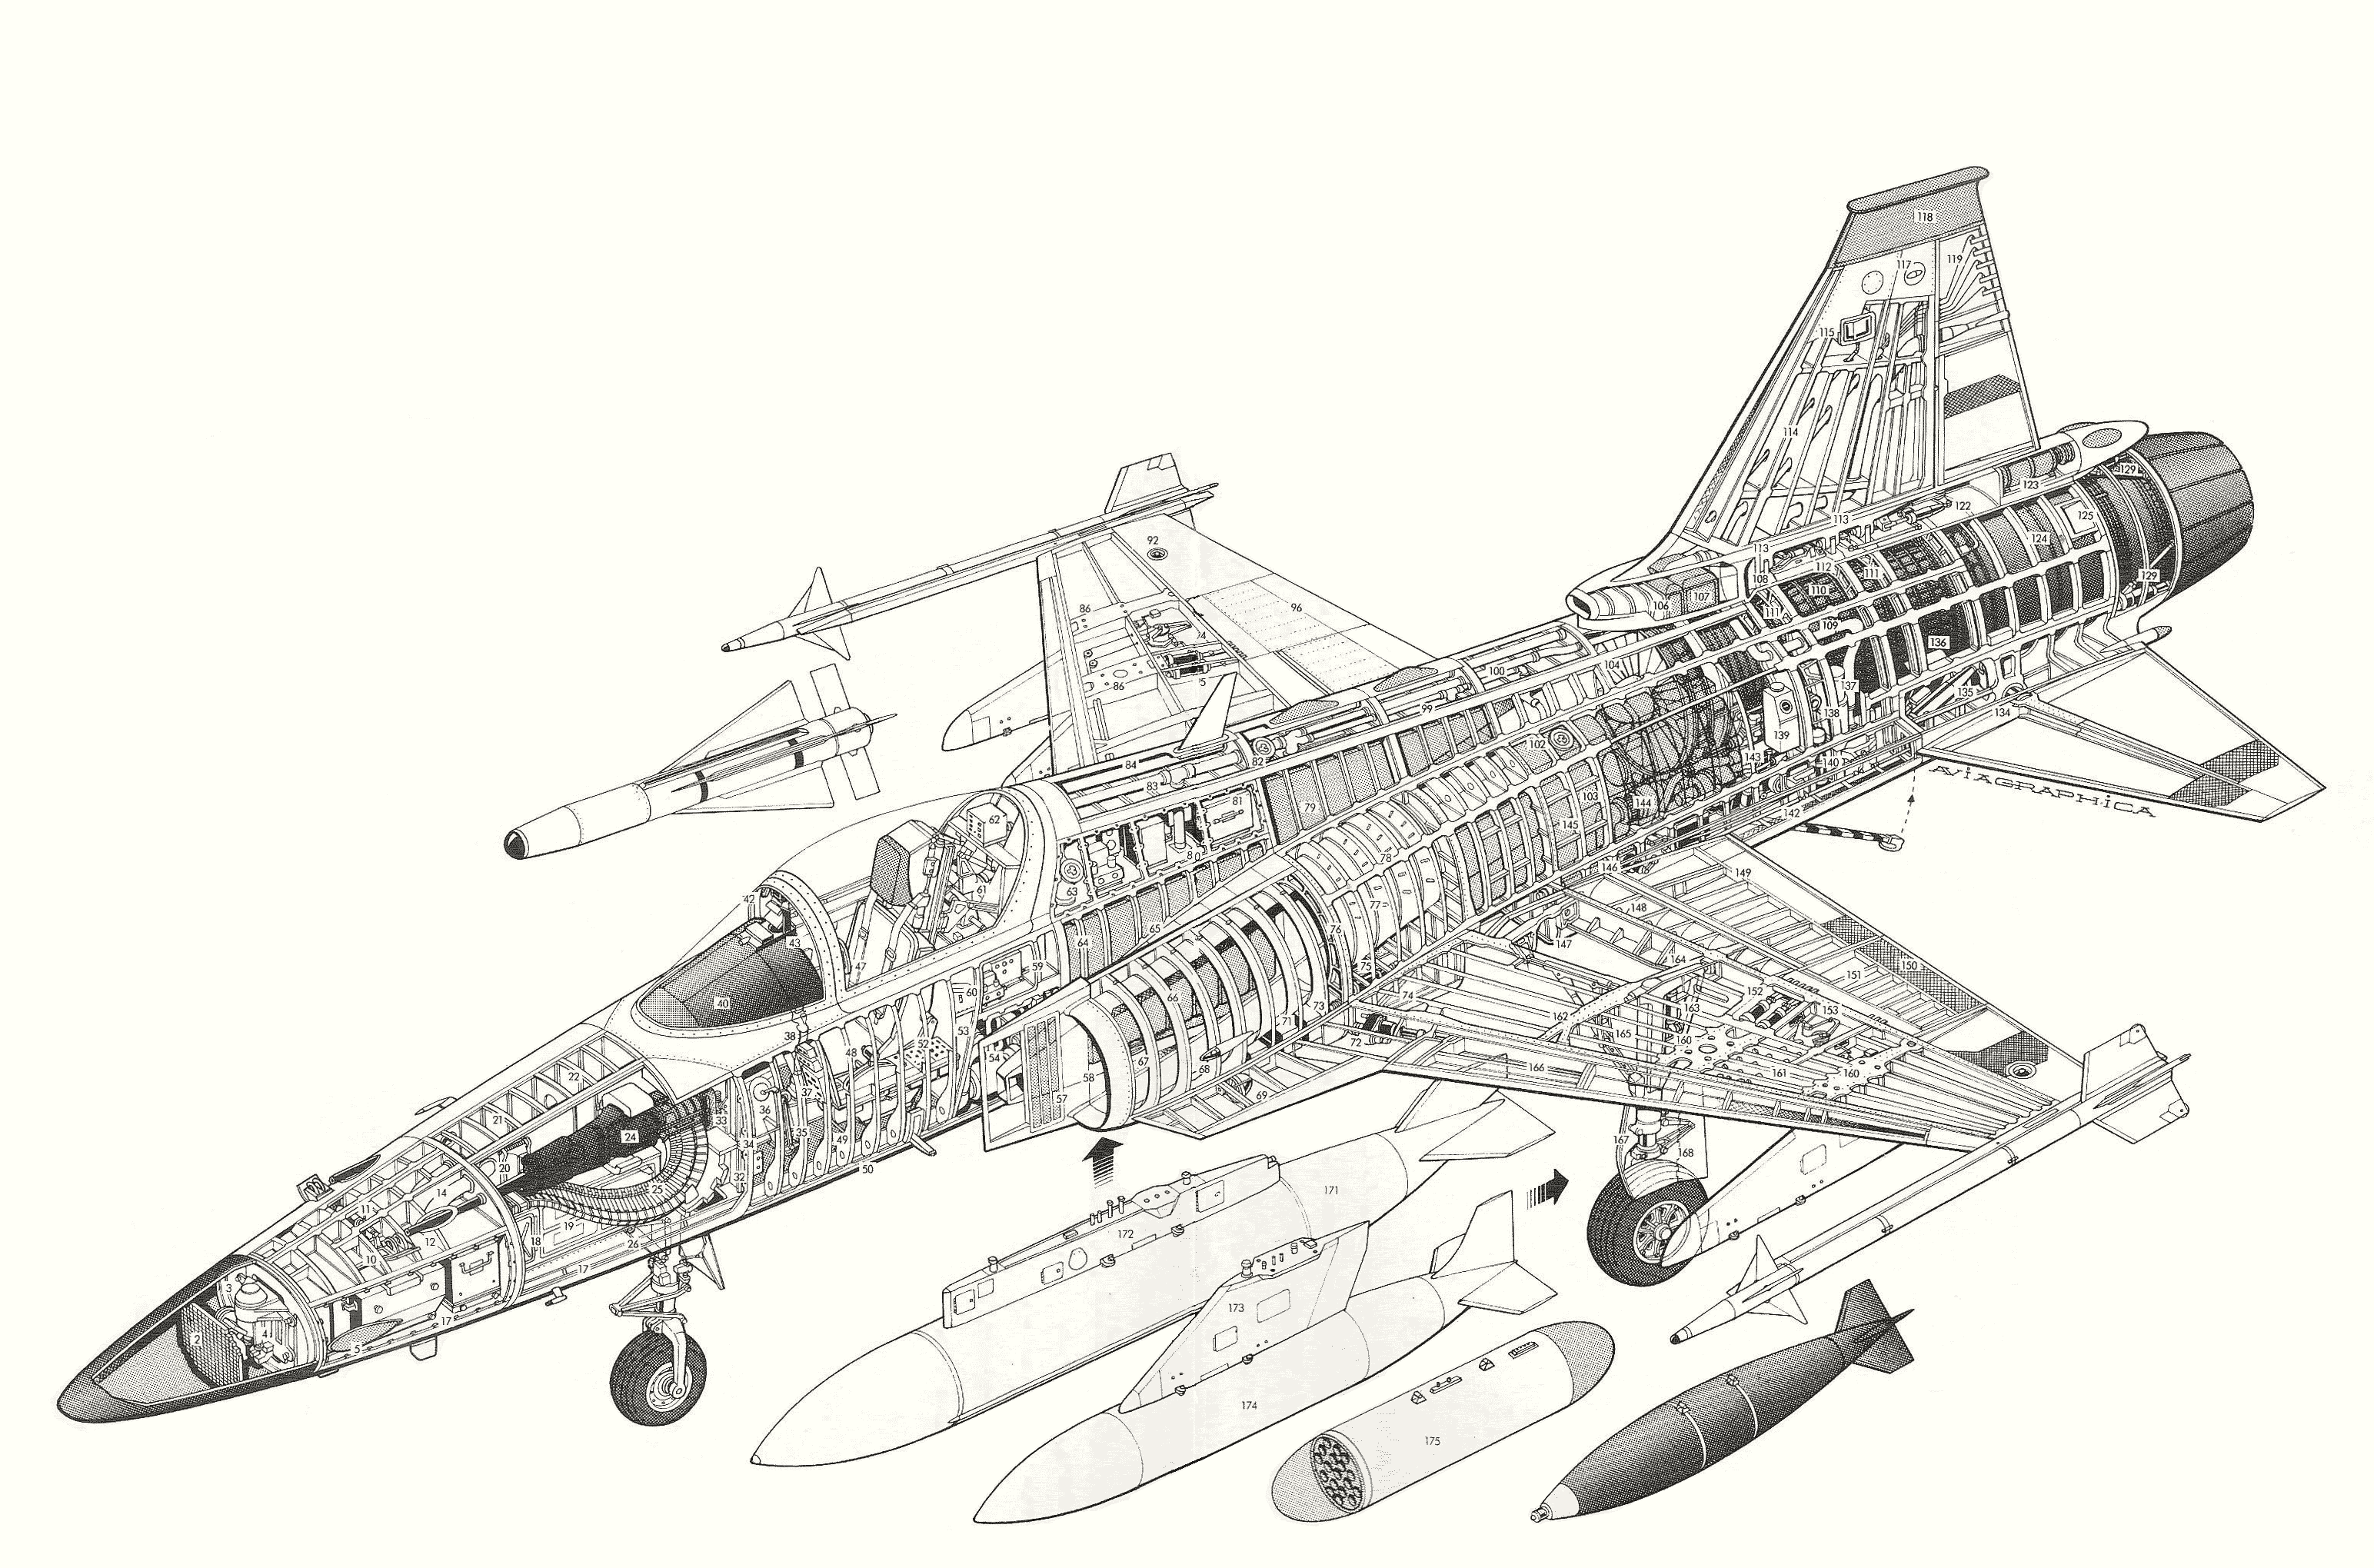 Northrop F-20 Tigershark cutaway drawing